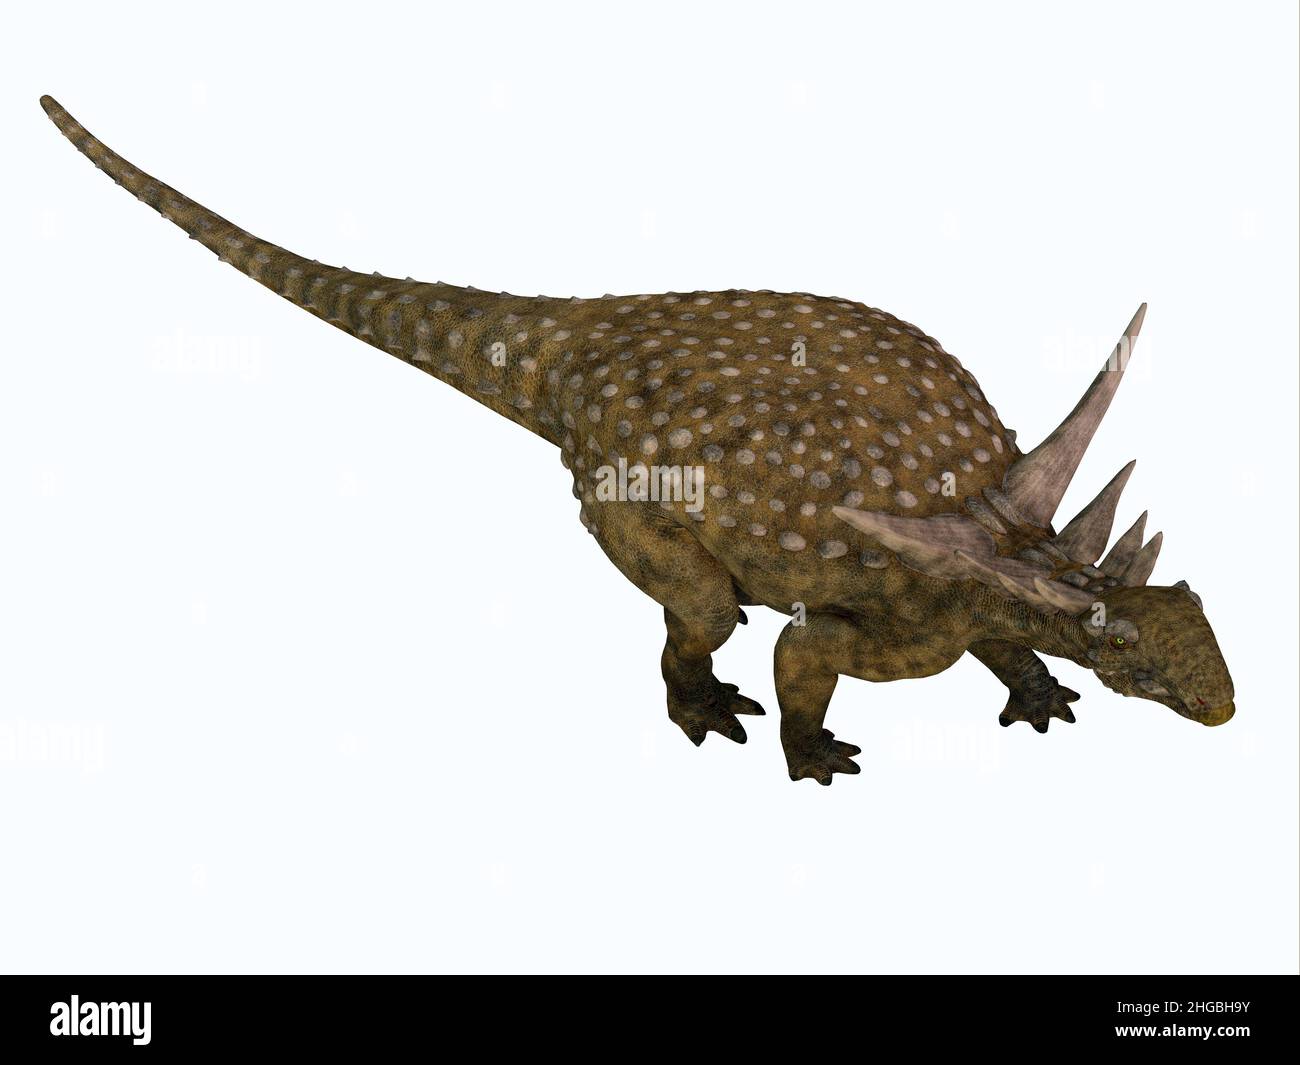 Sauropelta era un dinosaurio de nodosauro herbívoro blindado que vivió en América del Norte durante el período Cretácico. Foto de stock